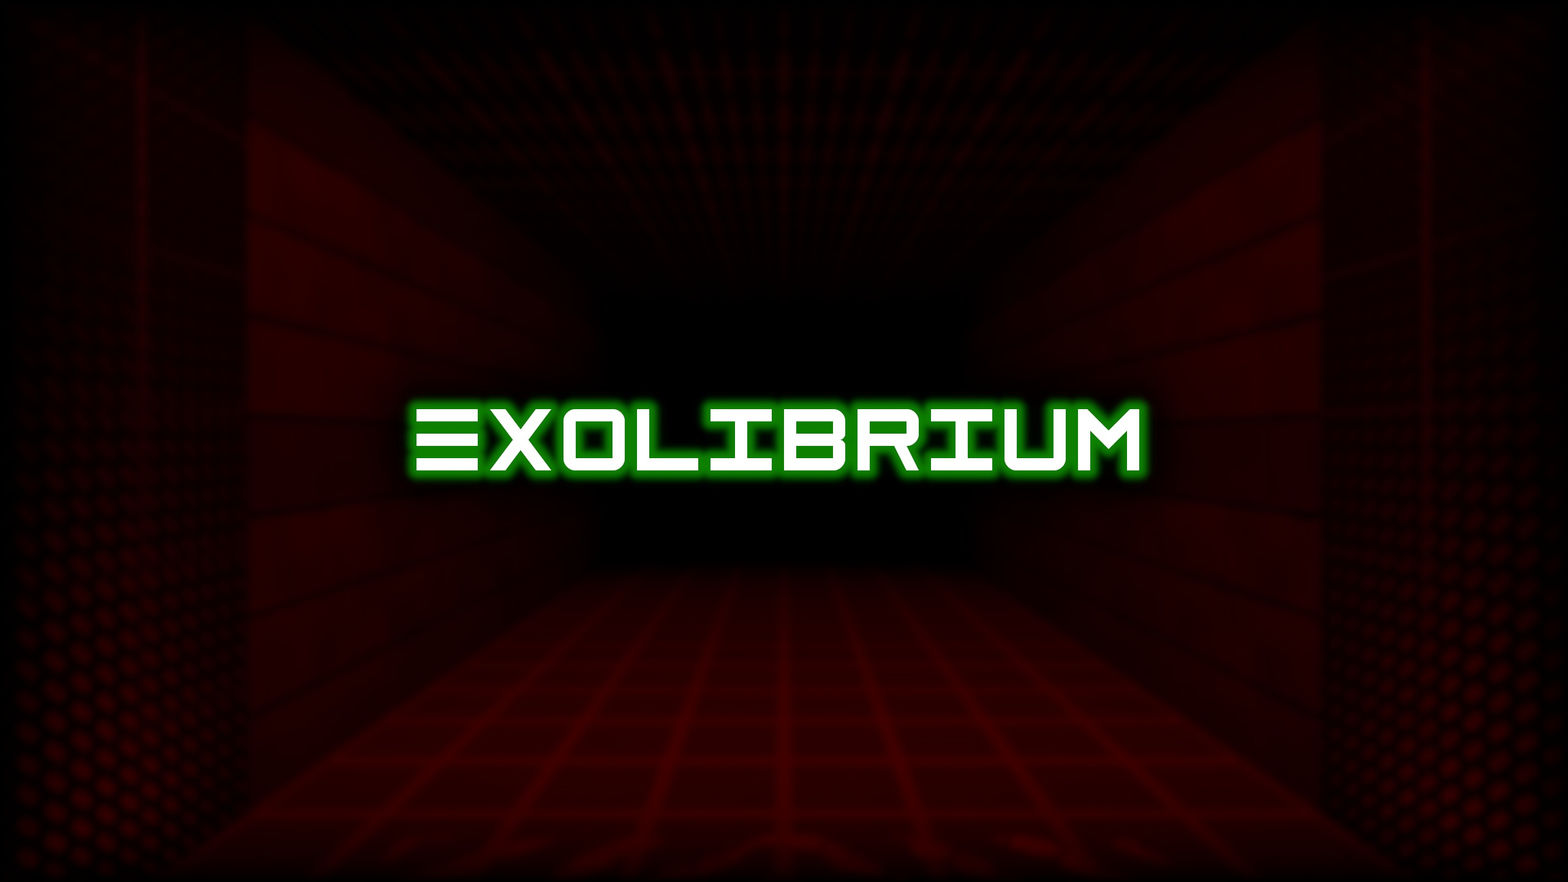 Exolibrium